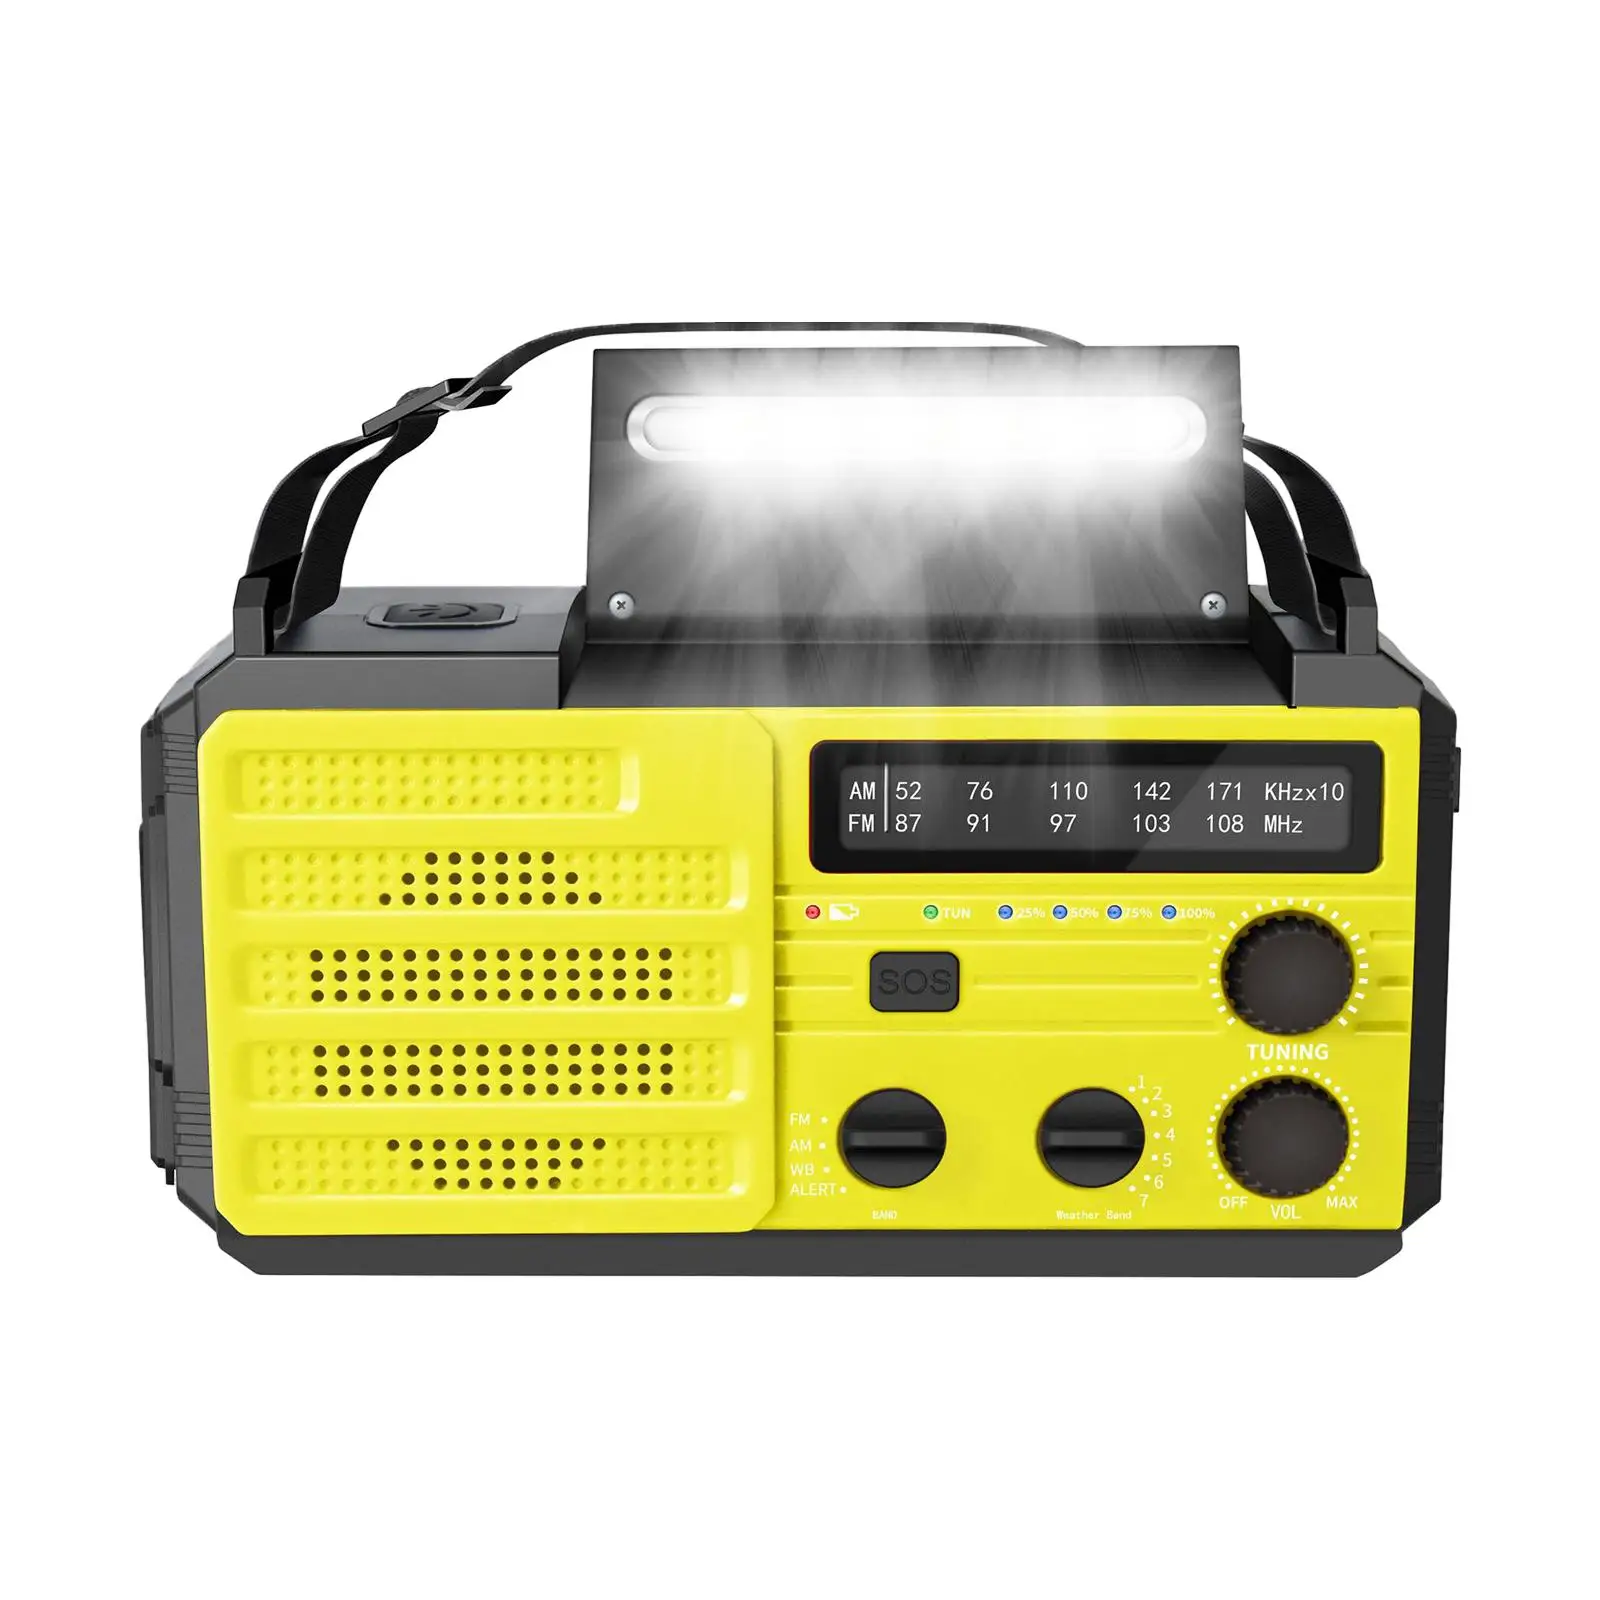 

Солнечное погодное радио портативное USB зарядное устройство SOS сигнализация динамо радио AM/FM погодное радио аварийное погодное радио для кемпинга путешествия